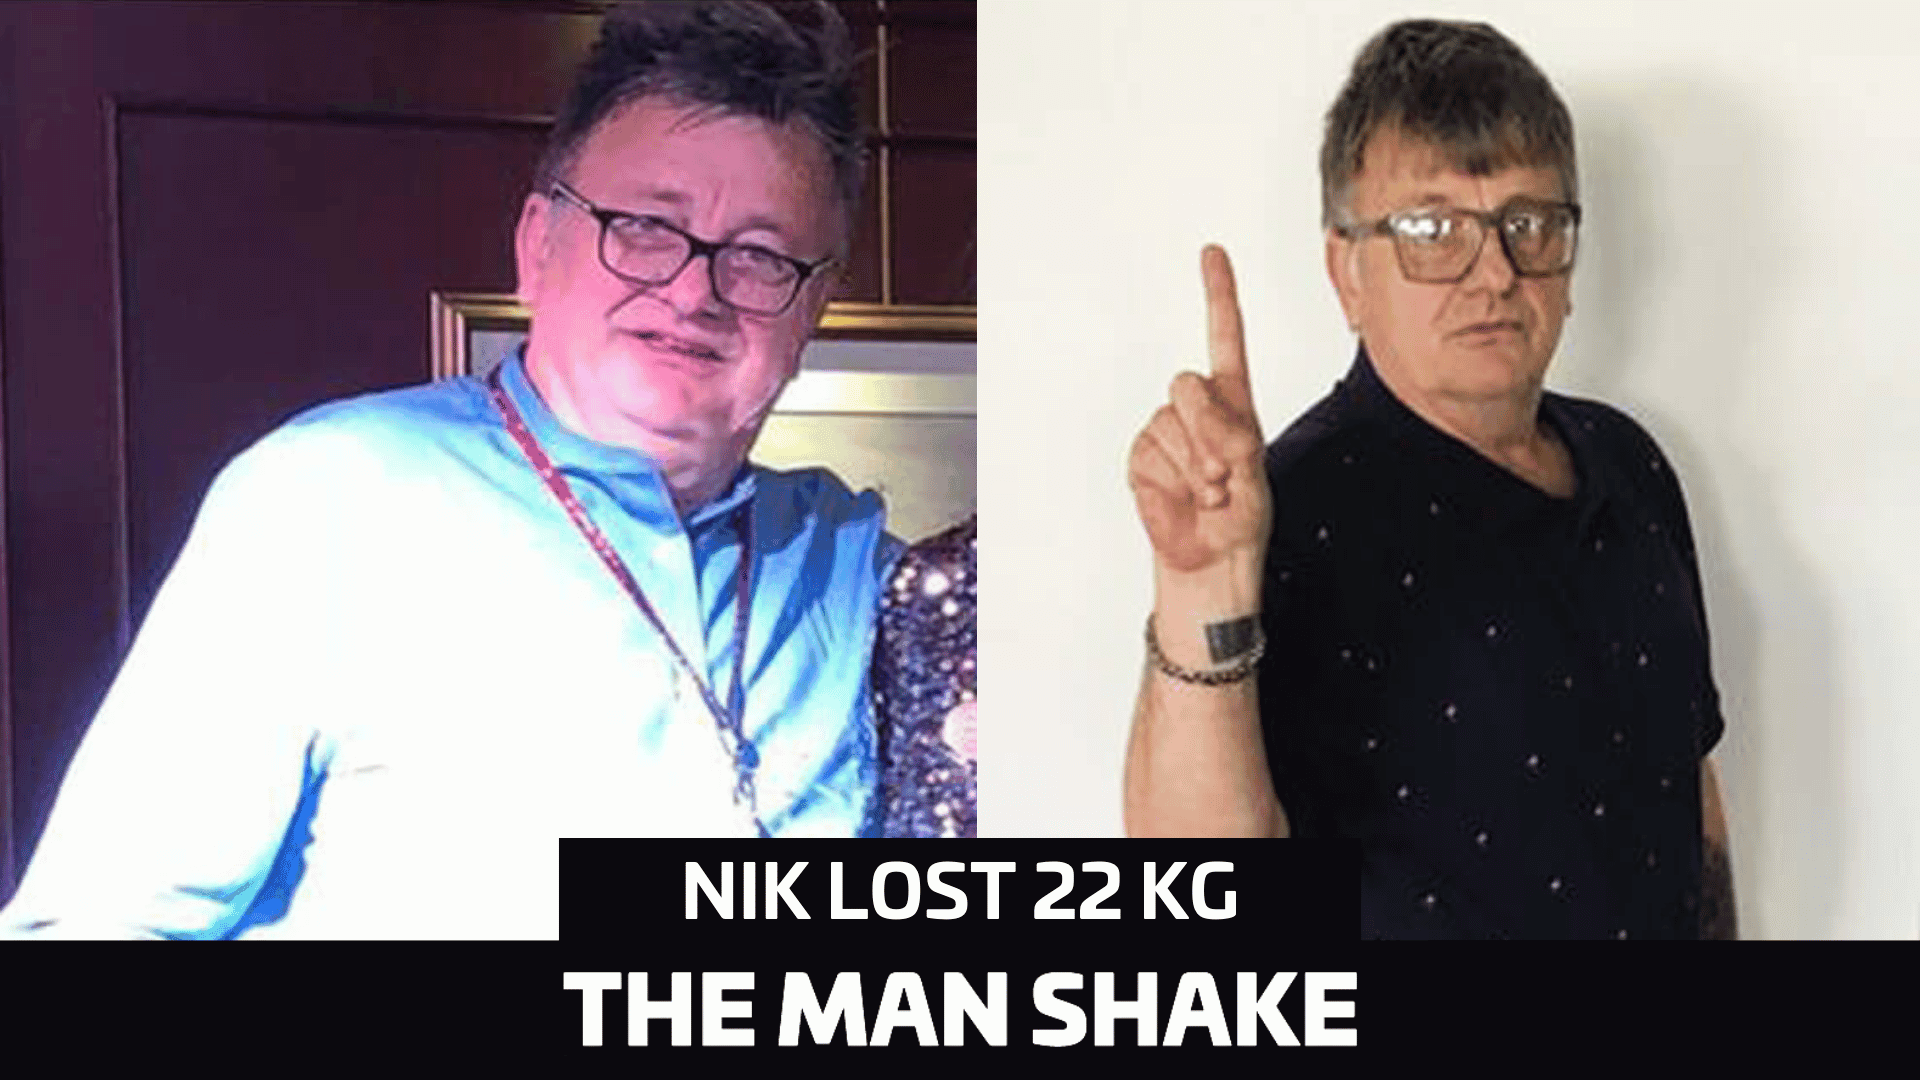 Nik lost 22kg thanks to lockdown!